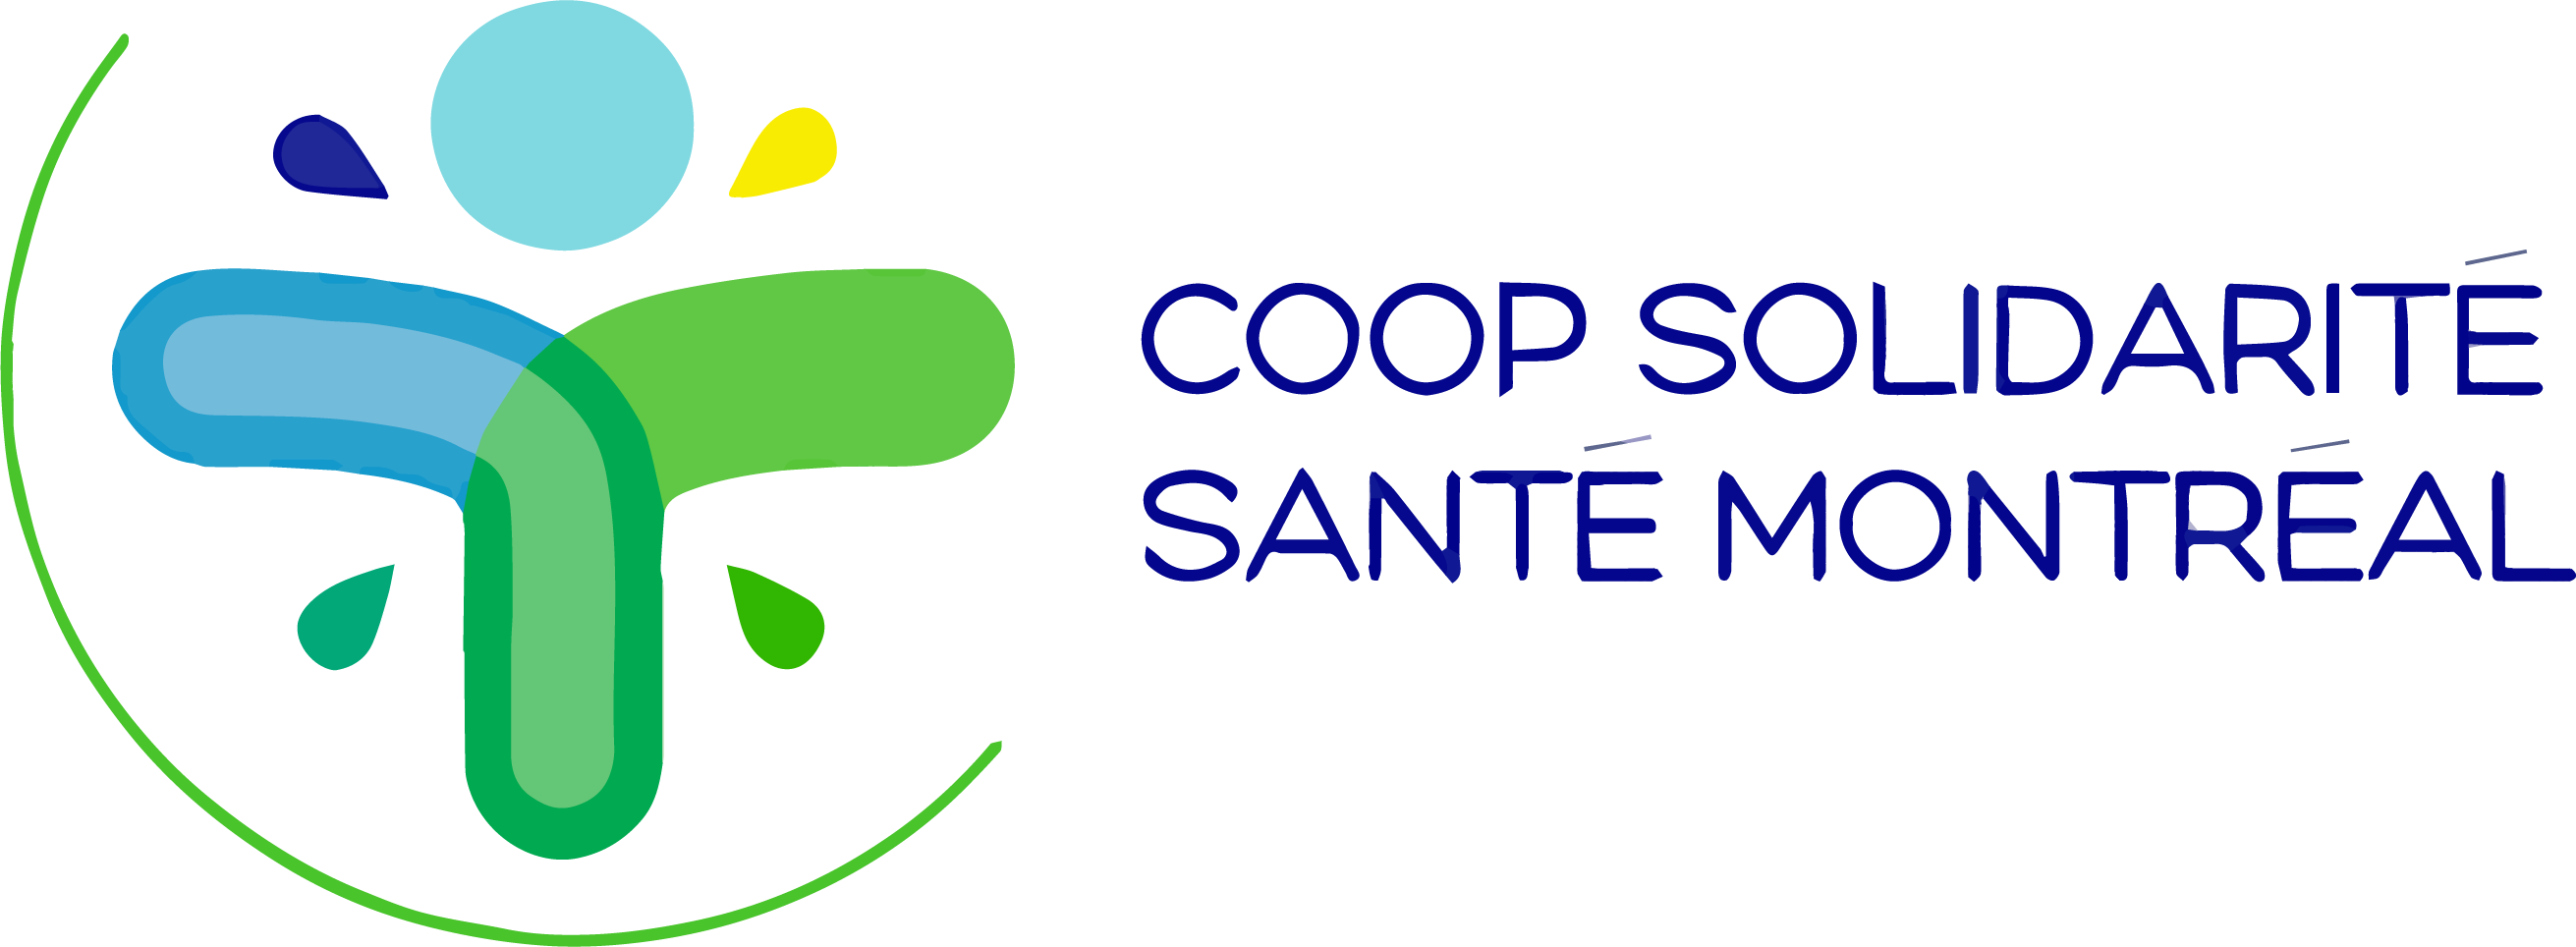 Coop Solidarité Santé Montréal Logo